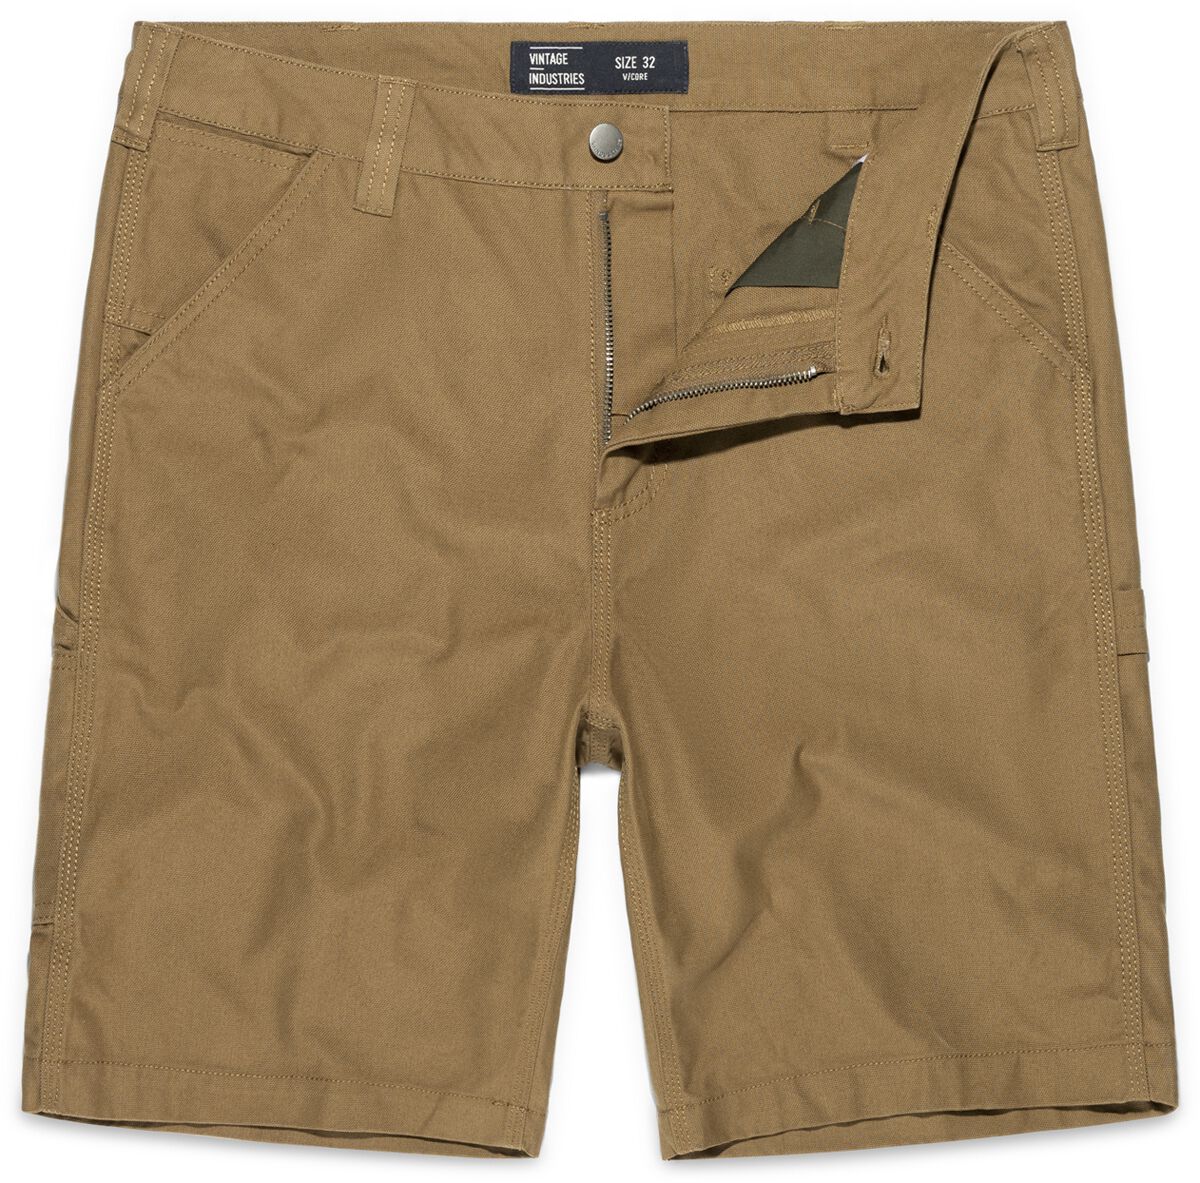 Vintage Industries Short - Dayton Shorts - 32 bis 38 - für Männer - Größe 34 - beige